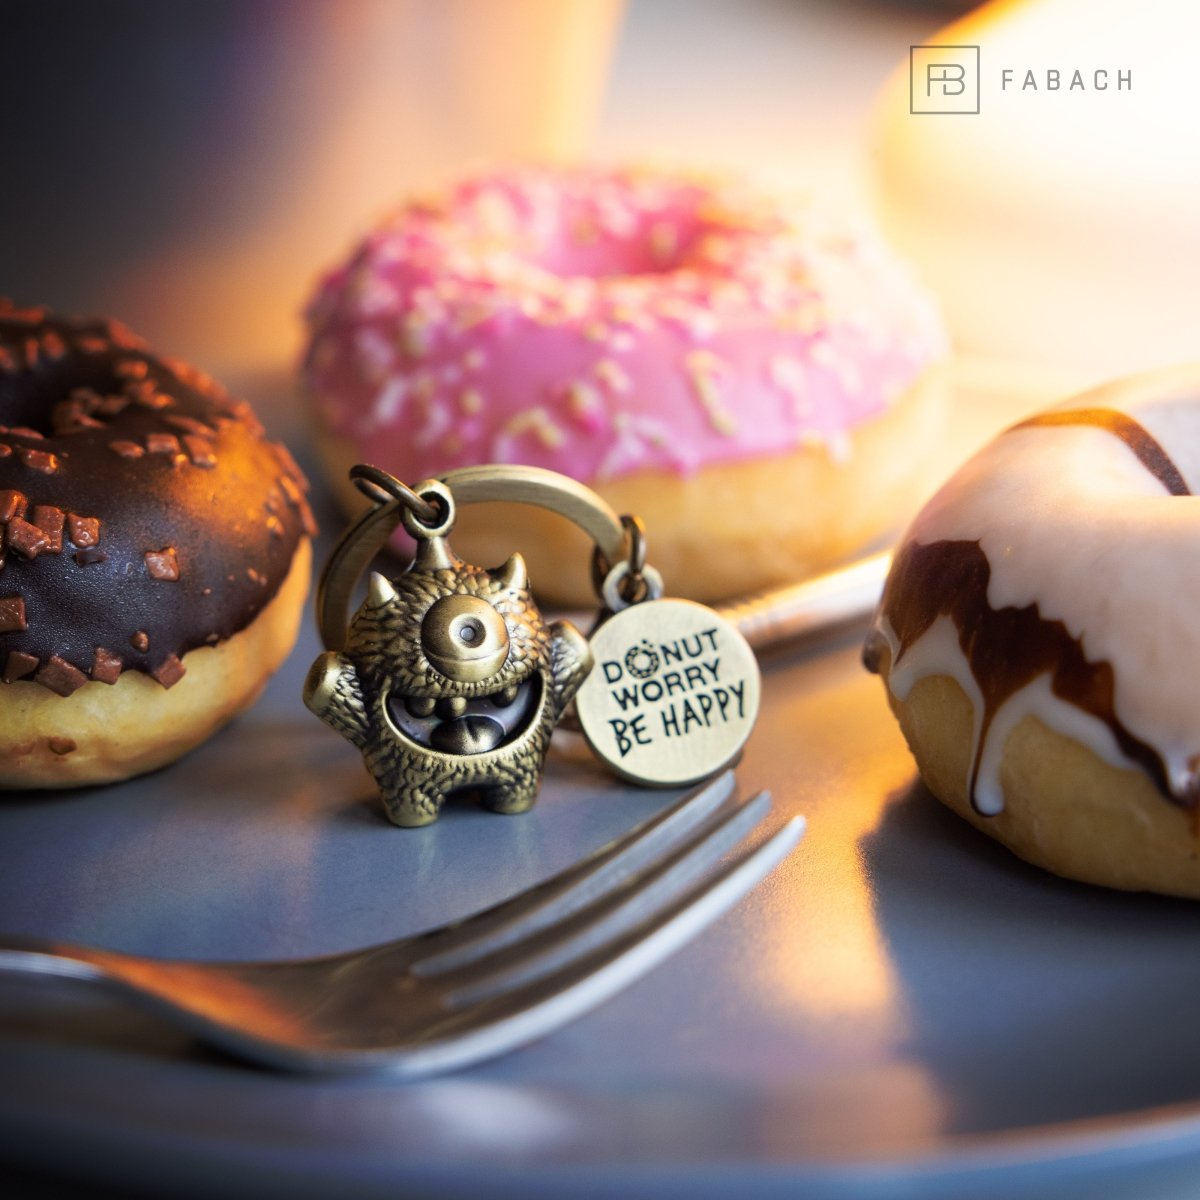 "Cyklops" Schlüsselanhänger Mutmacher - Süßes Glücksmonster mit Gravur "Donut worry, be happy!" - Kummermampfer Glücksbringer - FABACH